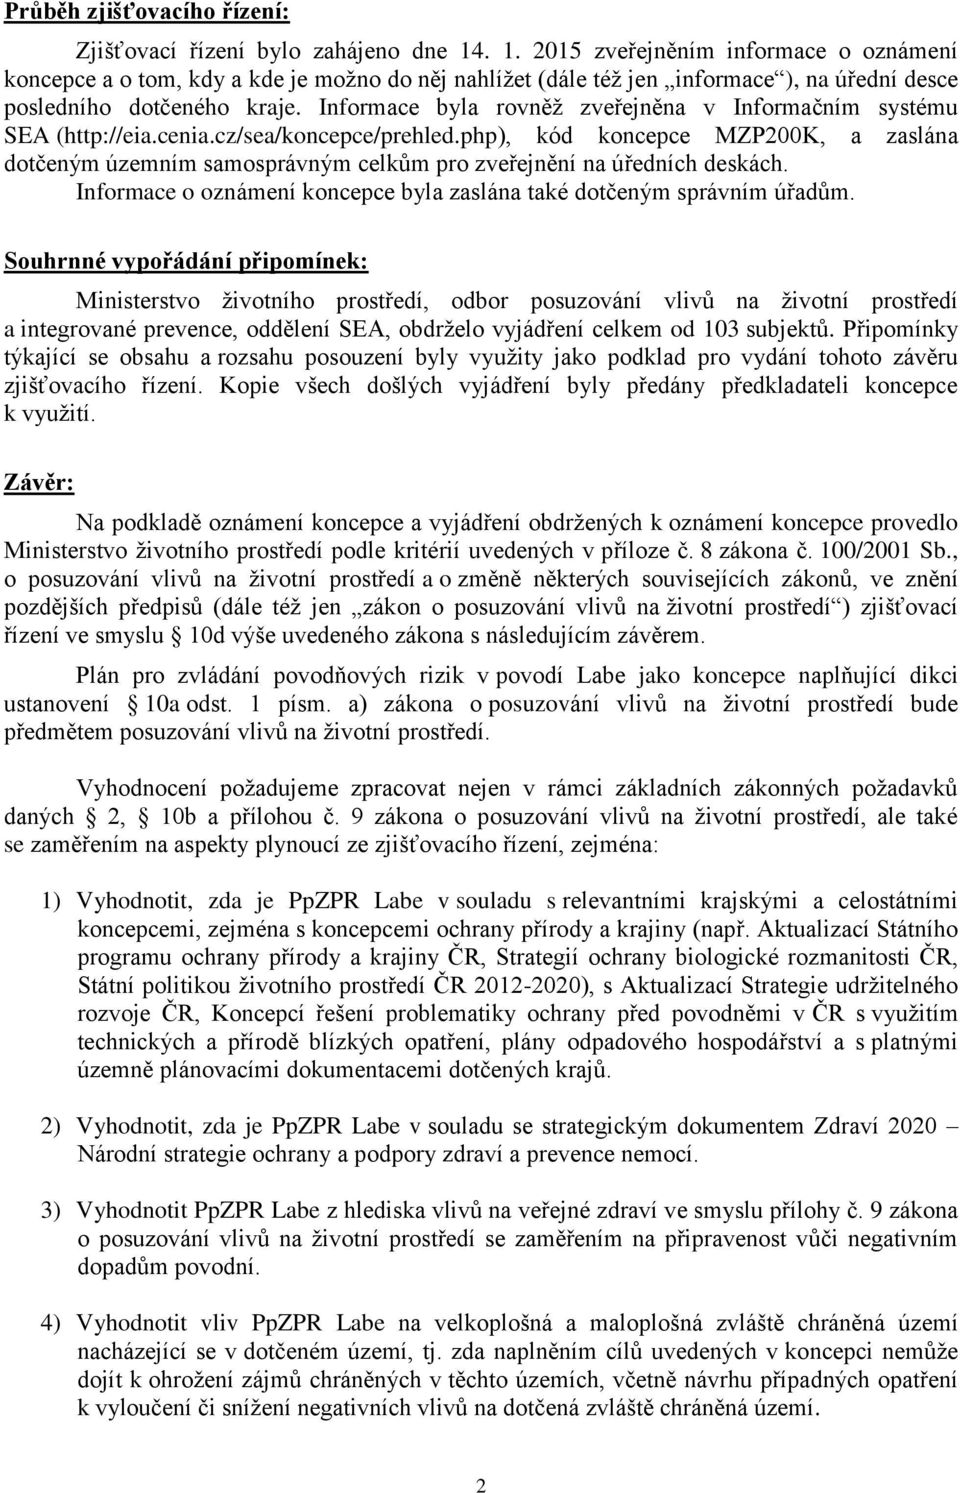 Informace byla rovněž zveřejněna v Informačním systému SEA (http://eia.cenia.cz/sea/koncepce/prehled.